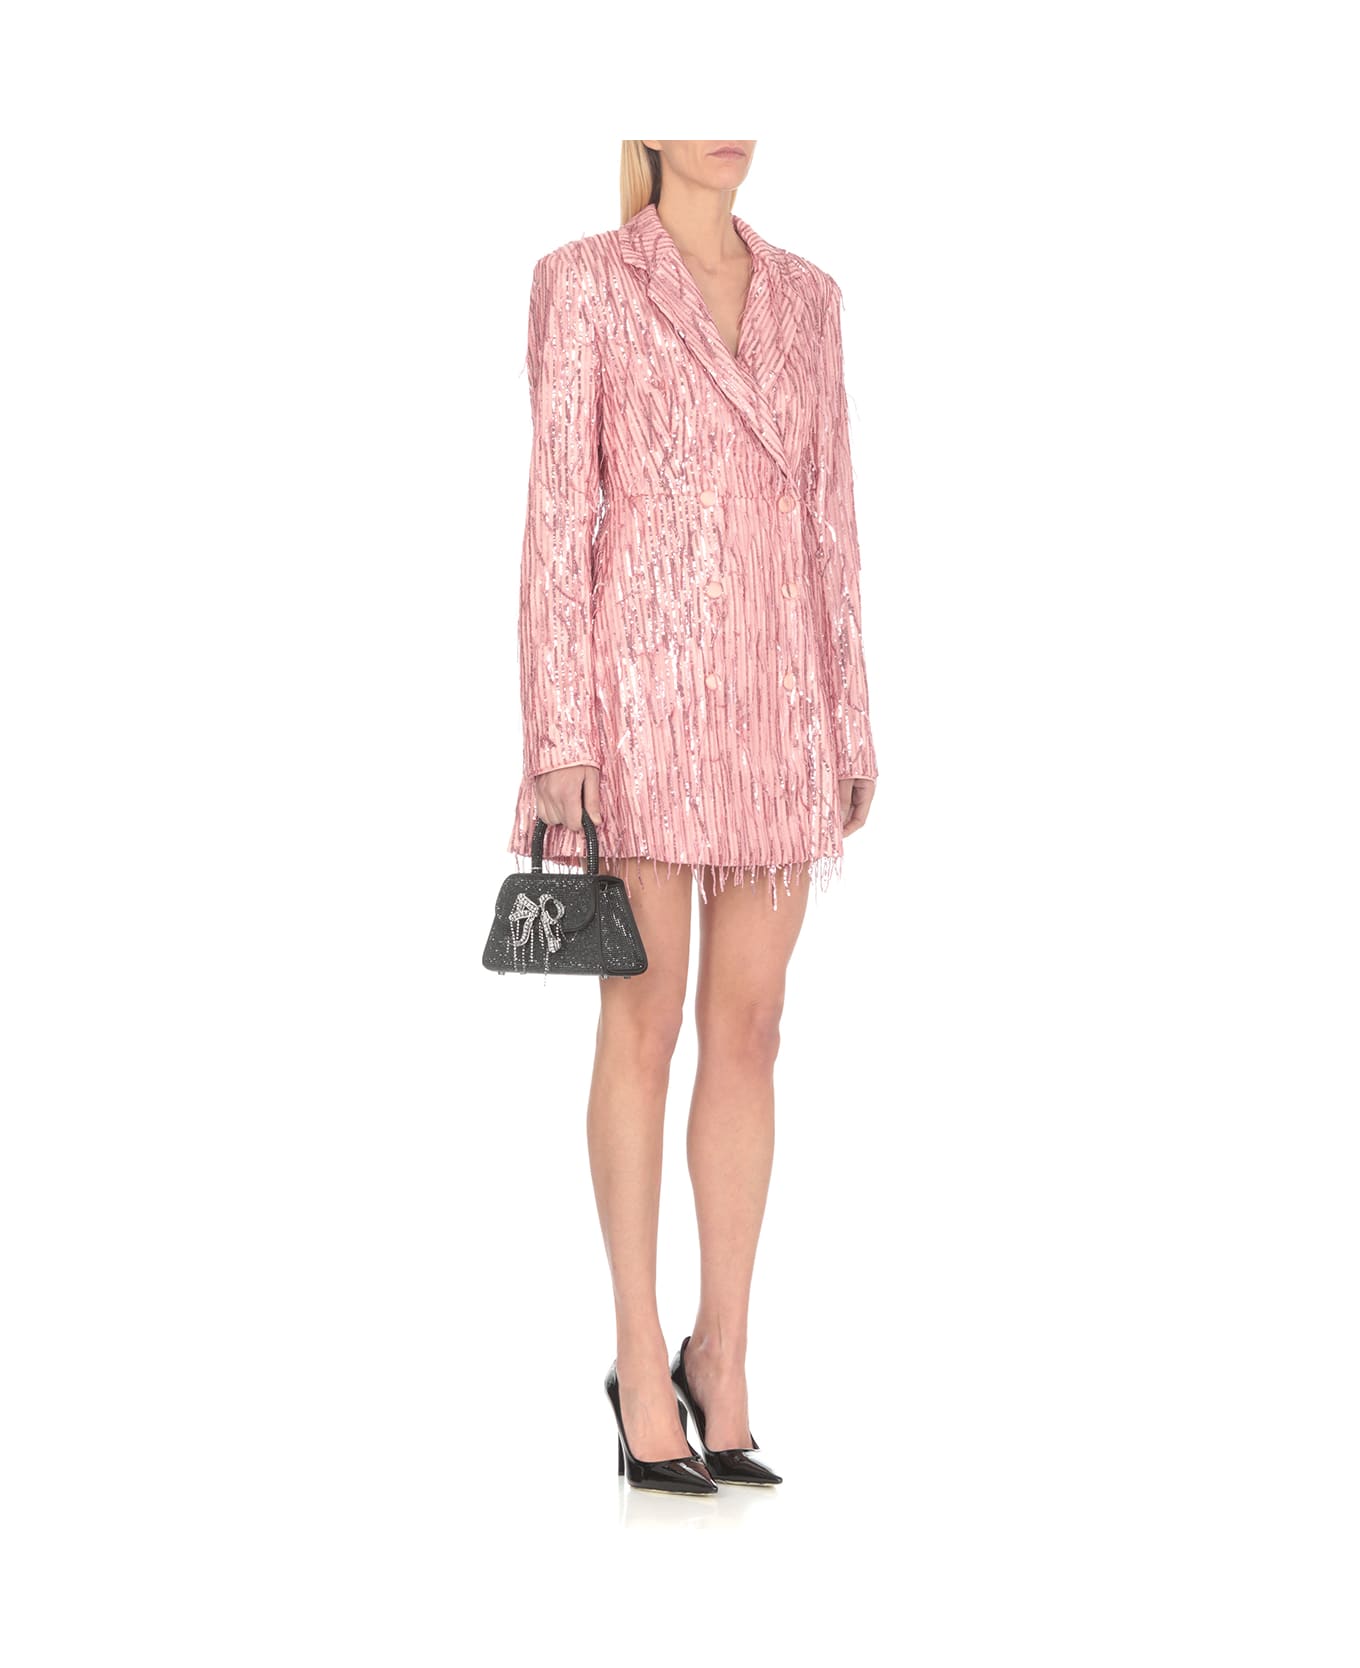 Rotate by Birger Christensen Blazer Dress With Paillettes - Pink